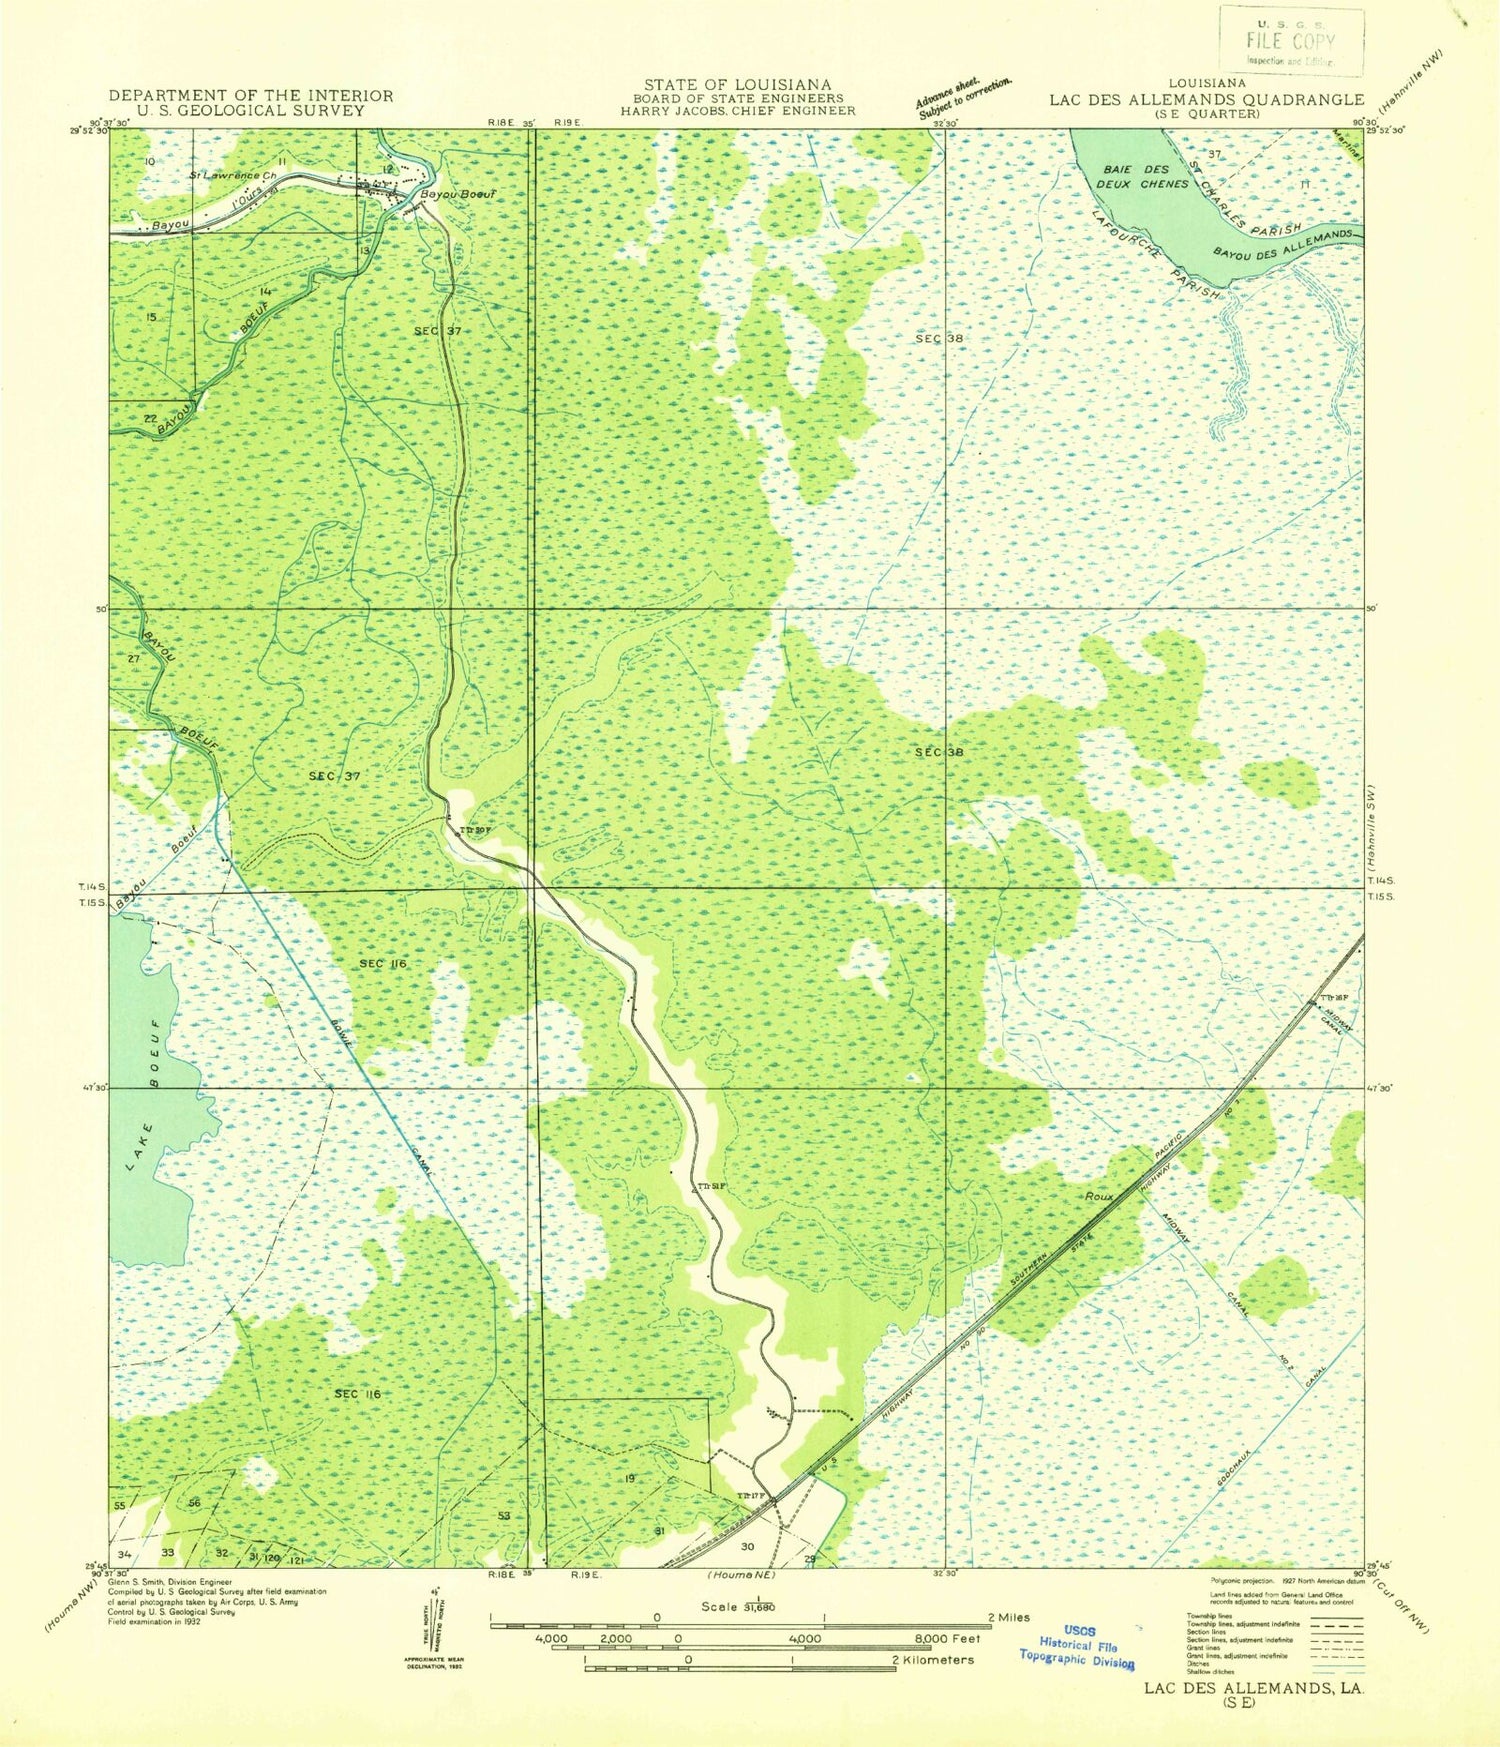 Classic USGS Bayou Boeuf Louisiana 7.5'x7.5' Topo Map Image